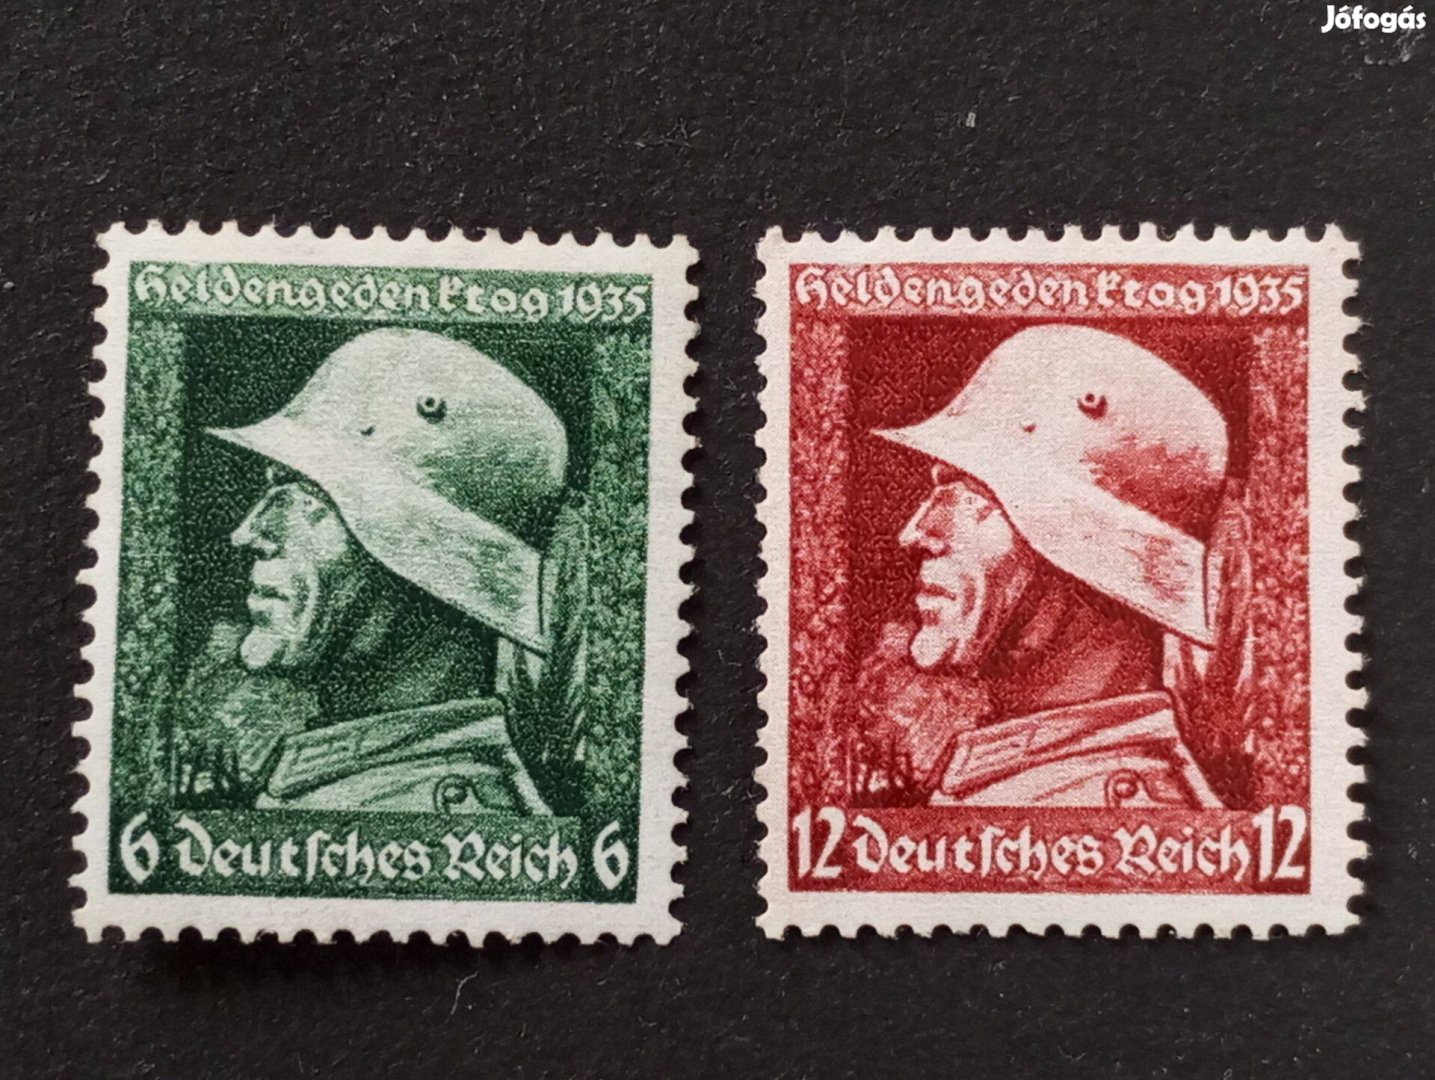 Deutsches Reich 1935. a hősök emléknapja Komplett bélyegsor